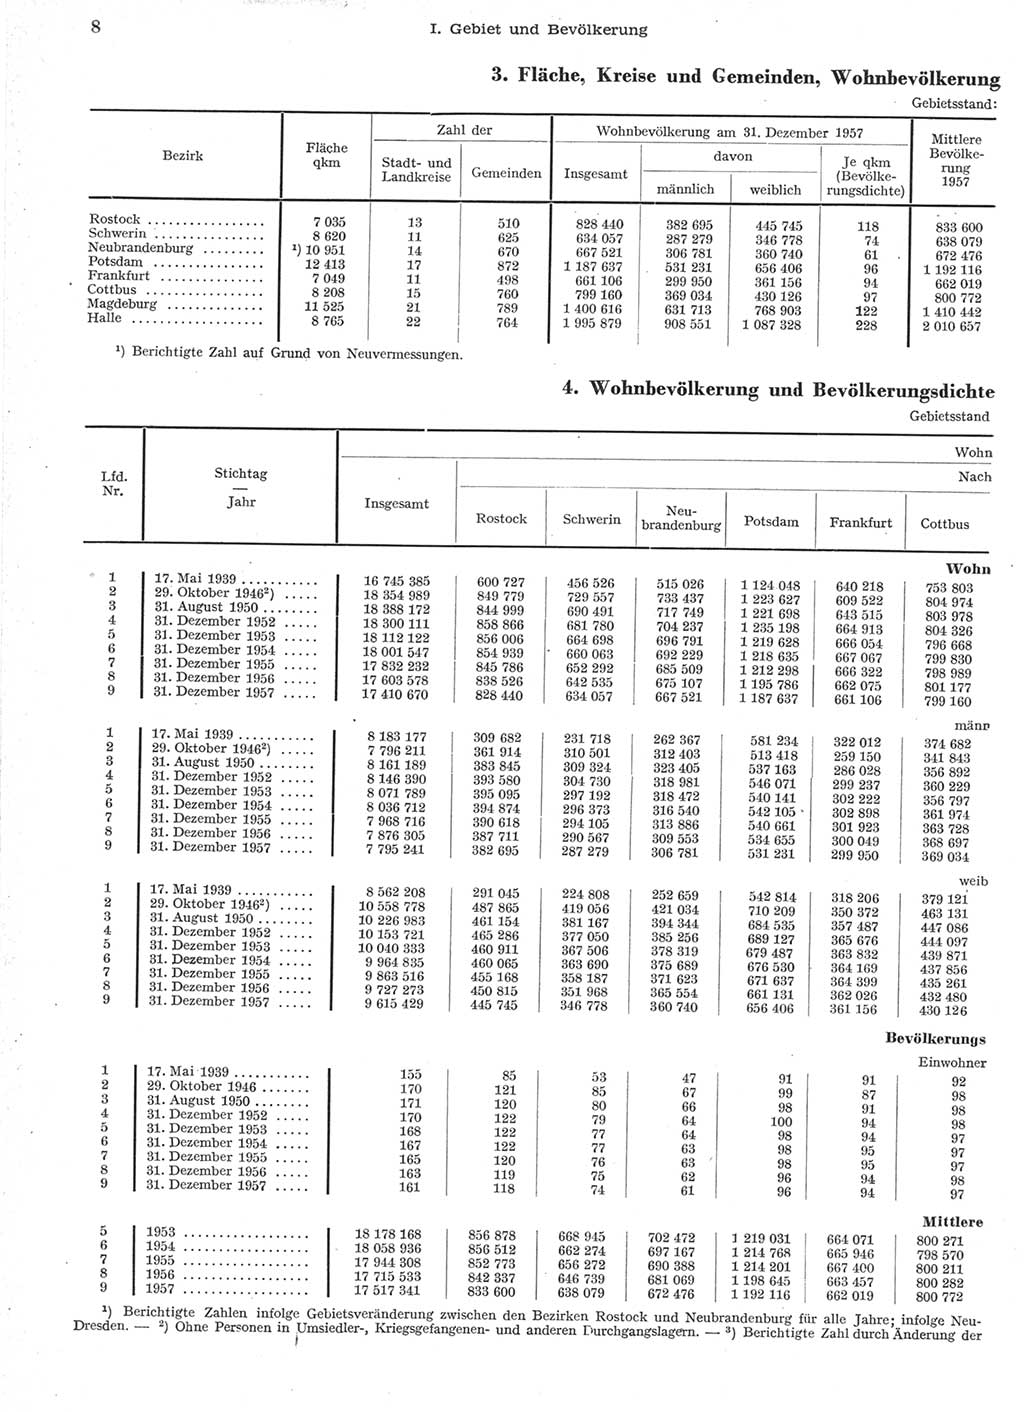 Statistisches Jahrbuch der Deutschen Demokratischen Republik (DDR) 1957, Seite 8 (Stat. Jb. DDR 1957, S. 8)